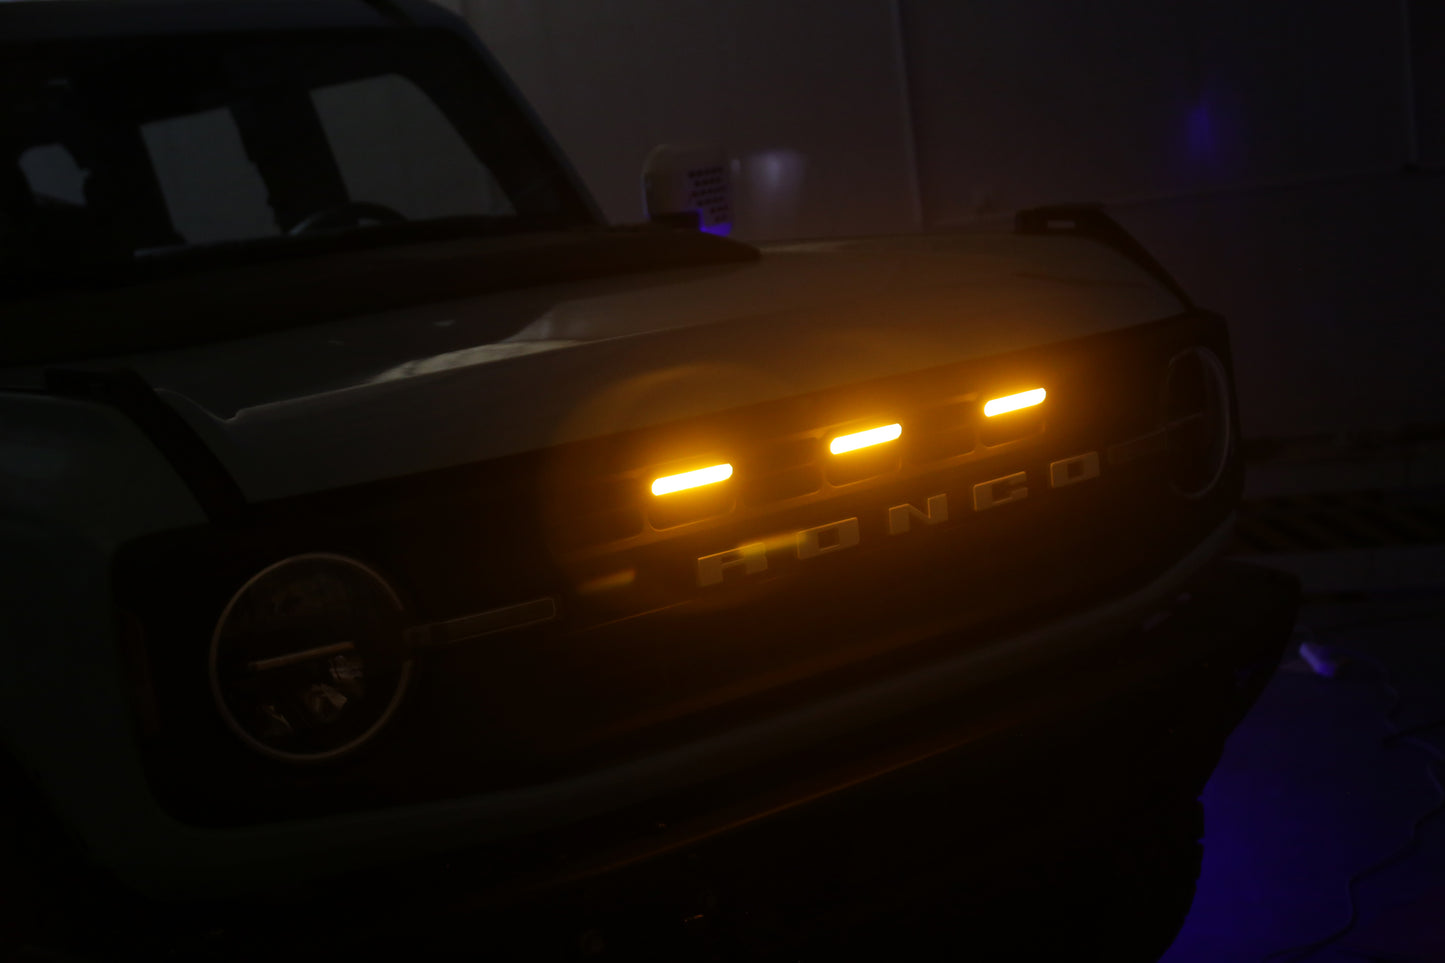 Raptor-Style Grille Lights (3 LEDs) for Ford Bronco 2021+ (Base, Black Diamond)